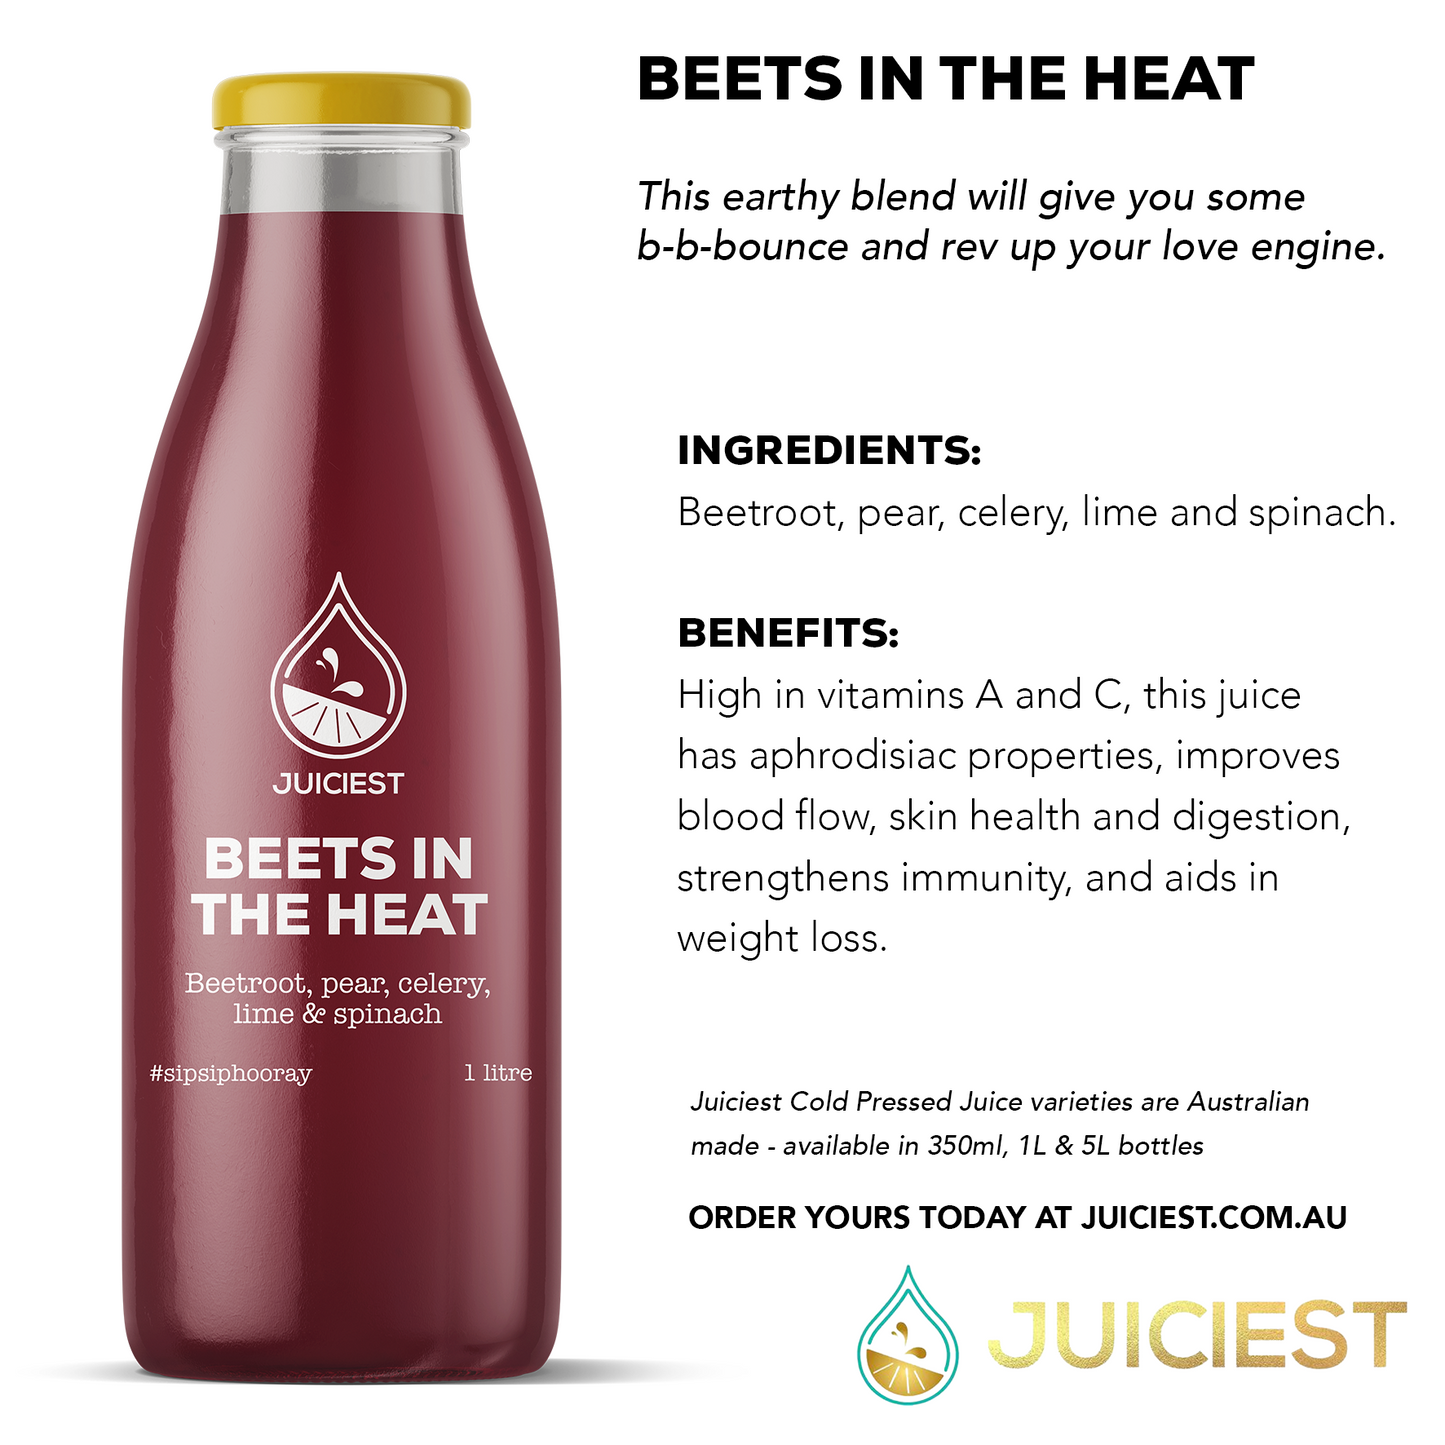 Juiciest Beets in the Heat Infographic